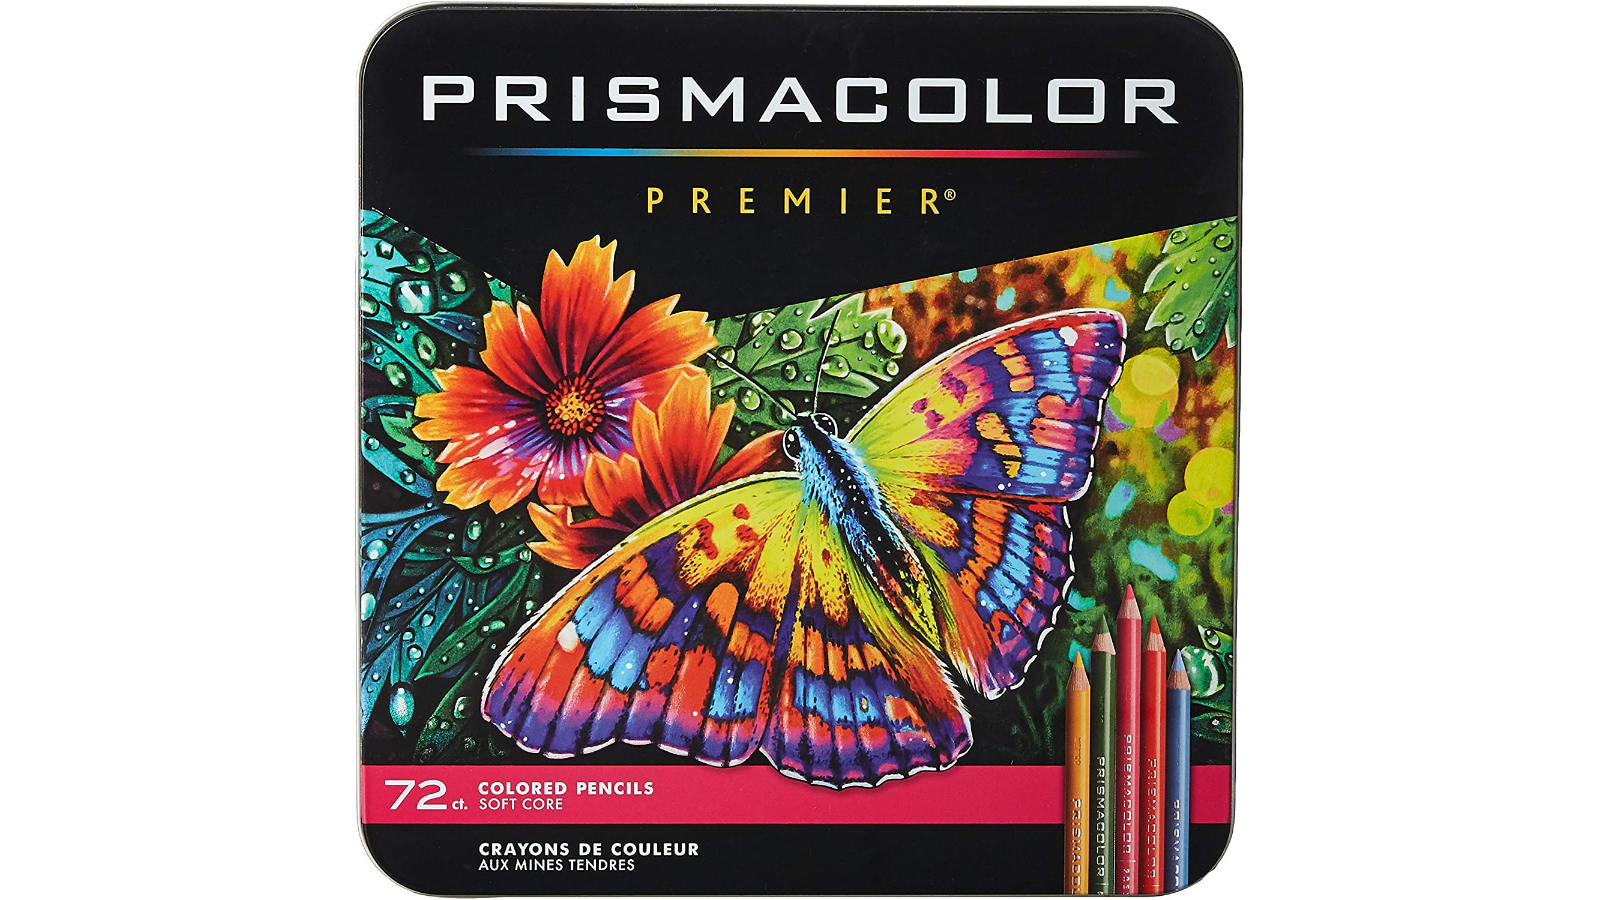 Best coloured pencils: Prismacolor Premier Colored Pencils